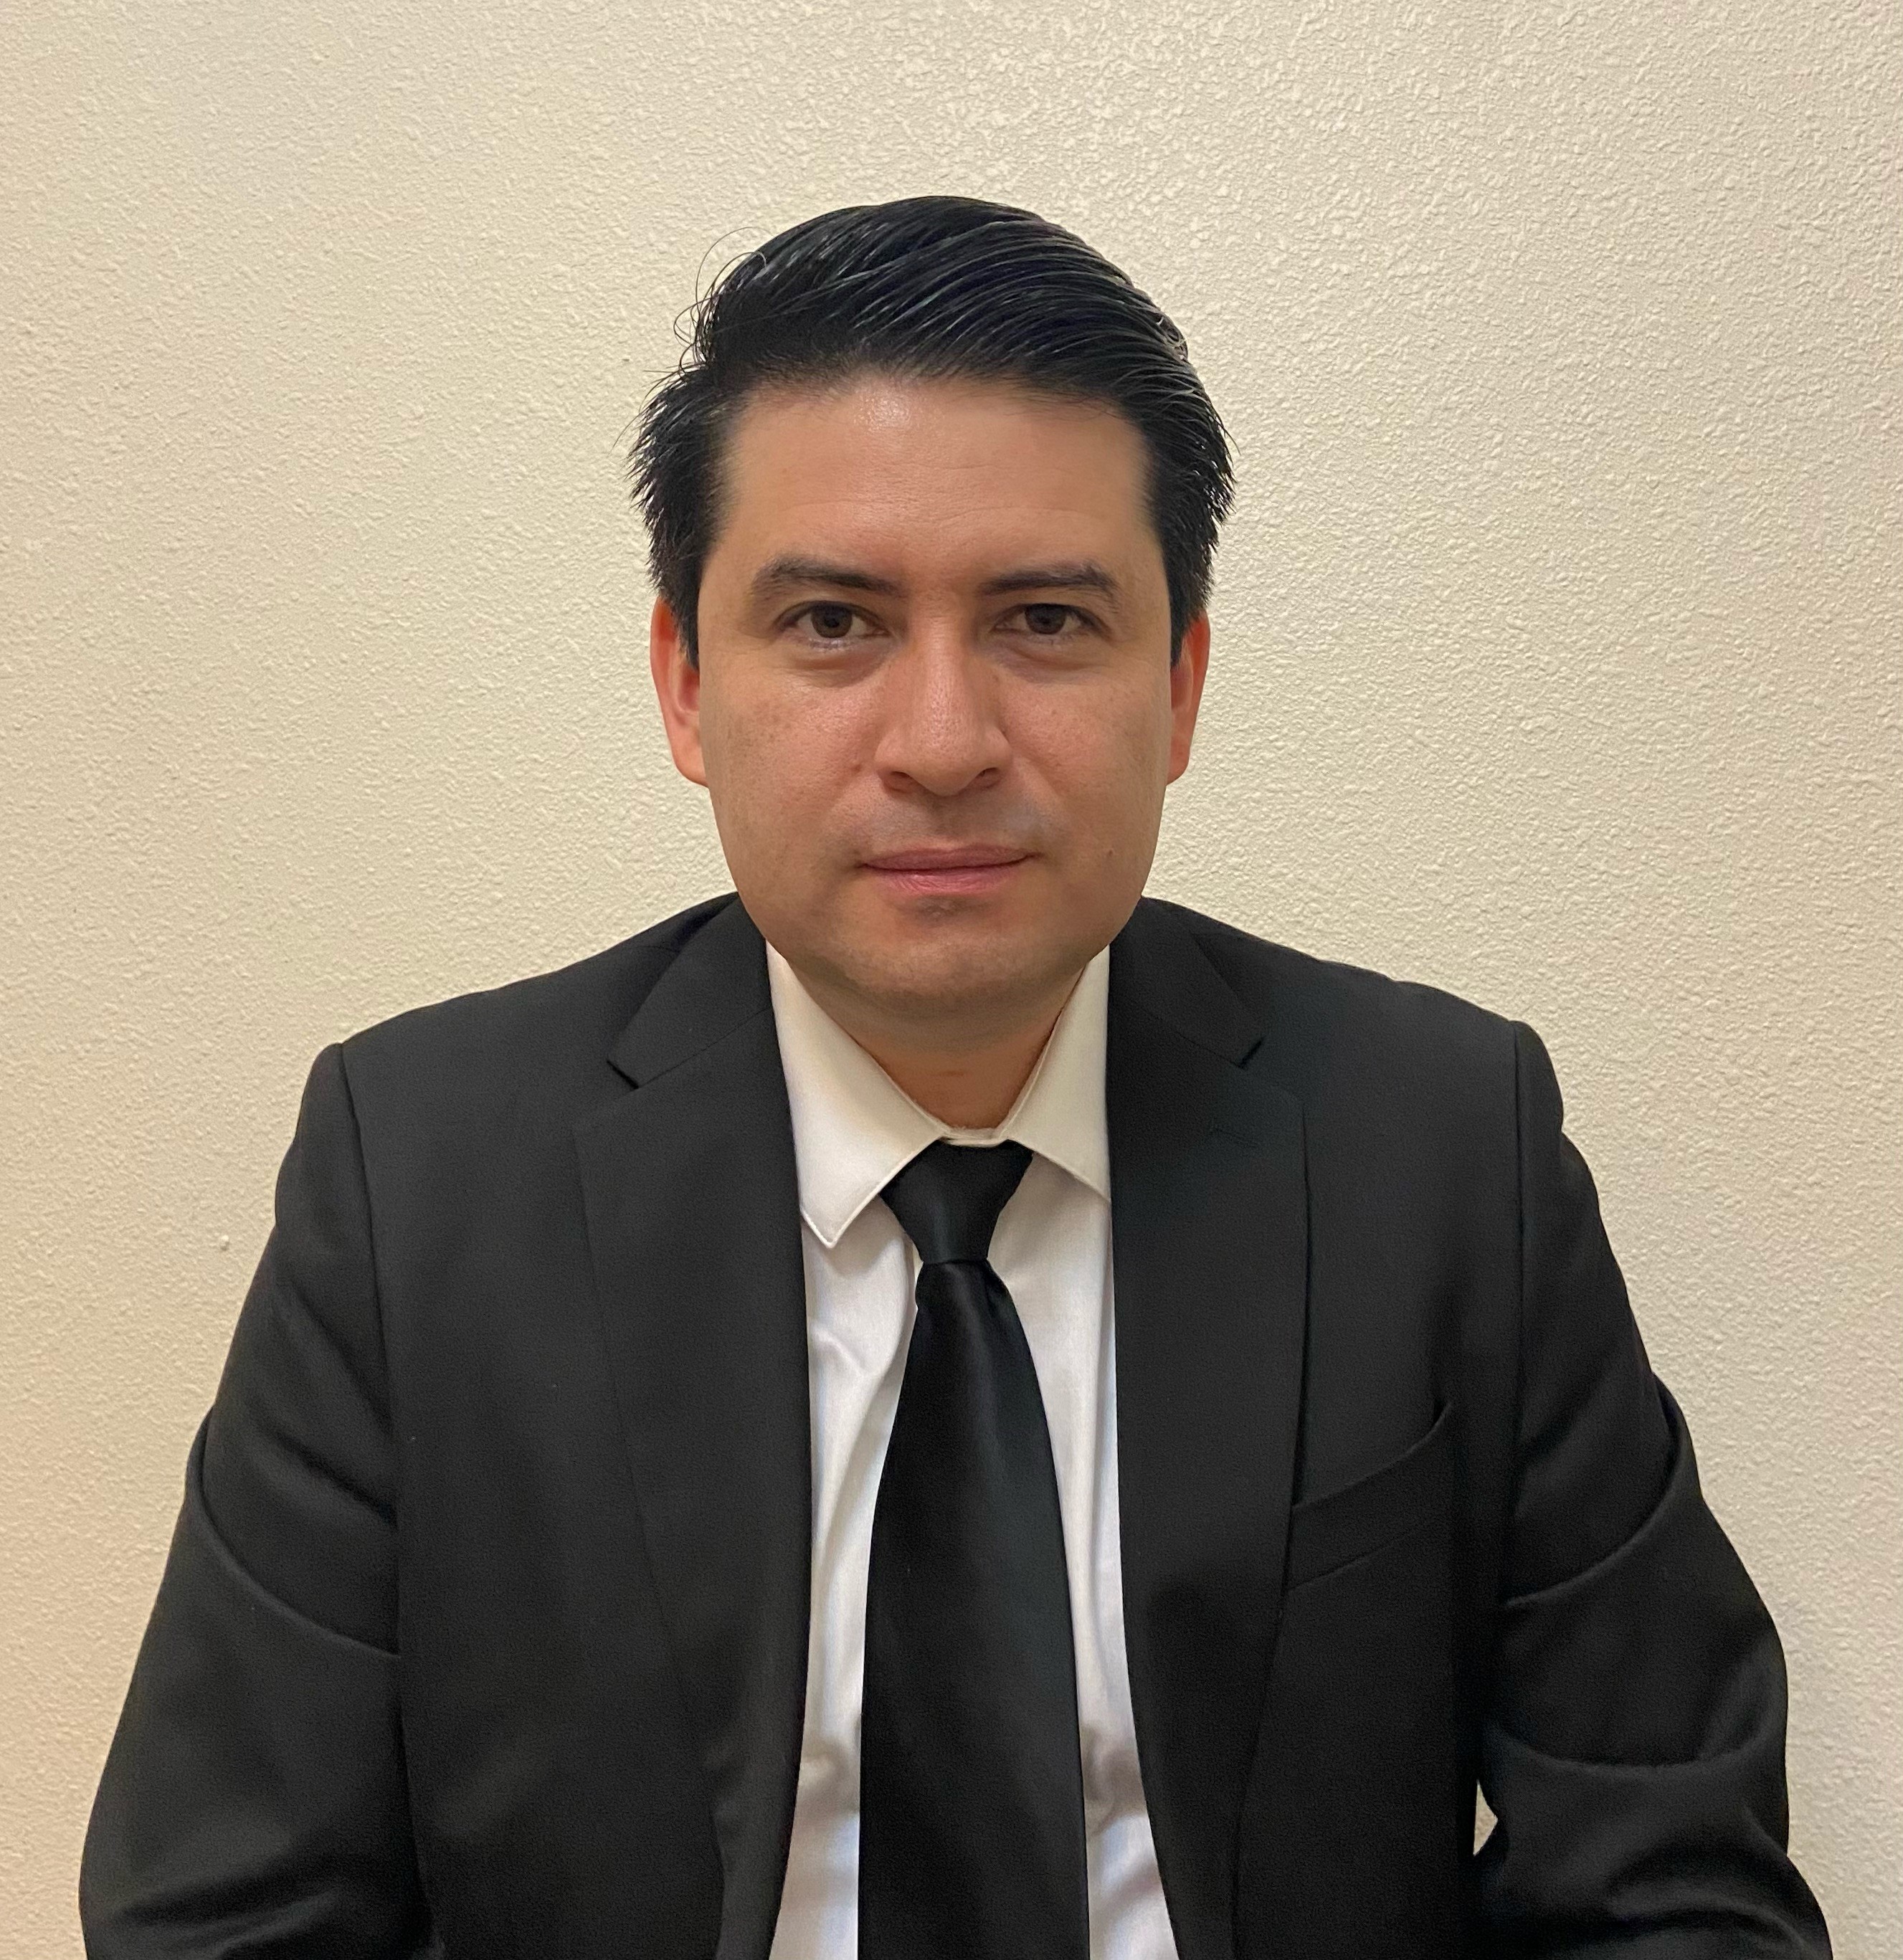 Edgar D. Rodriguez Velasquez